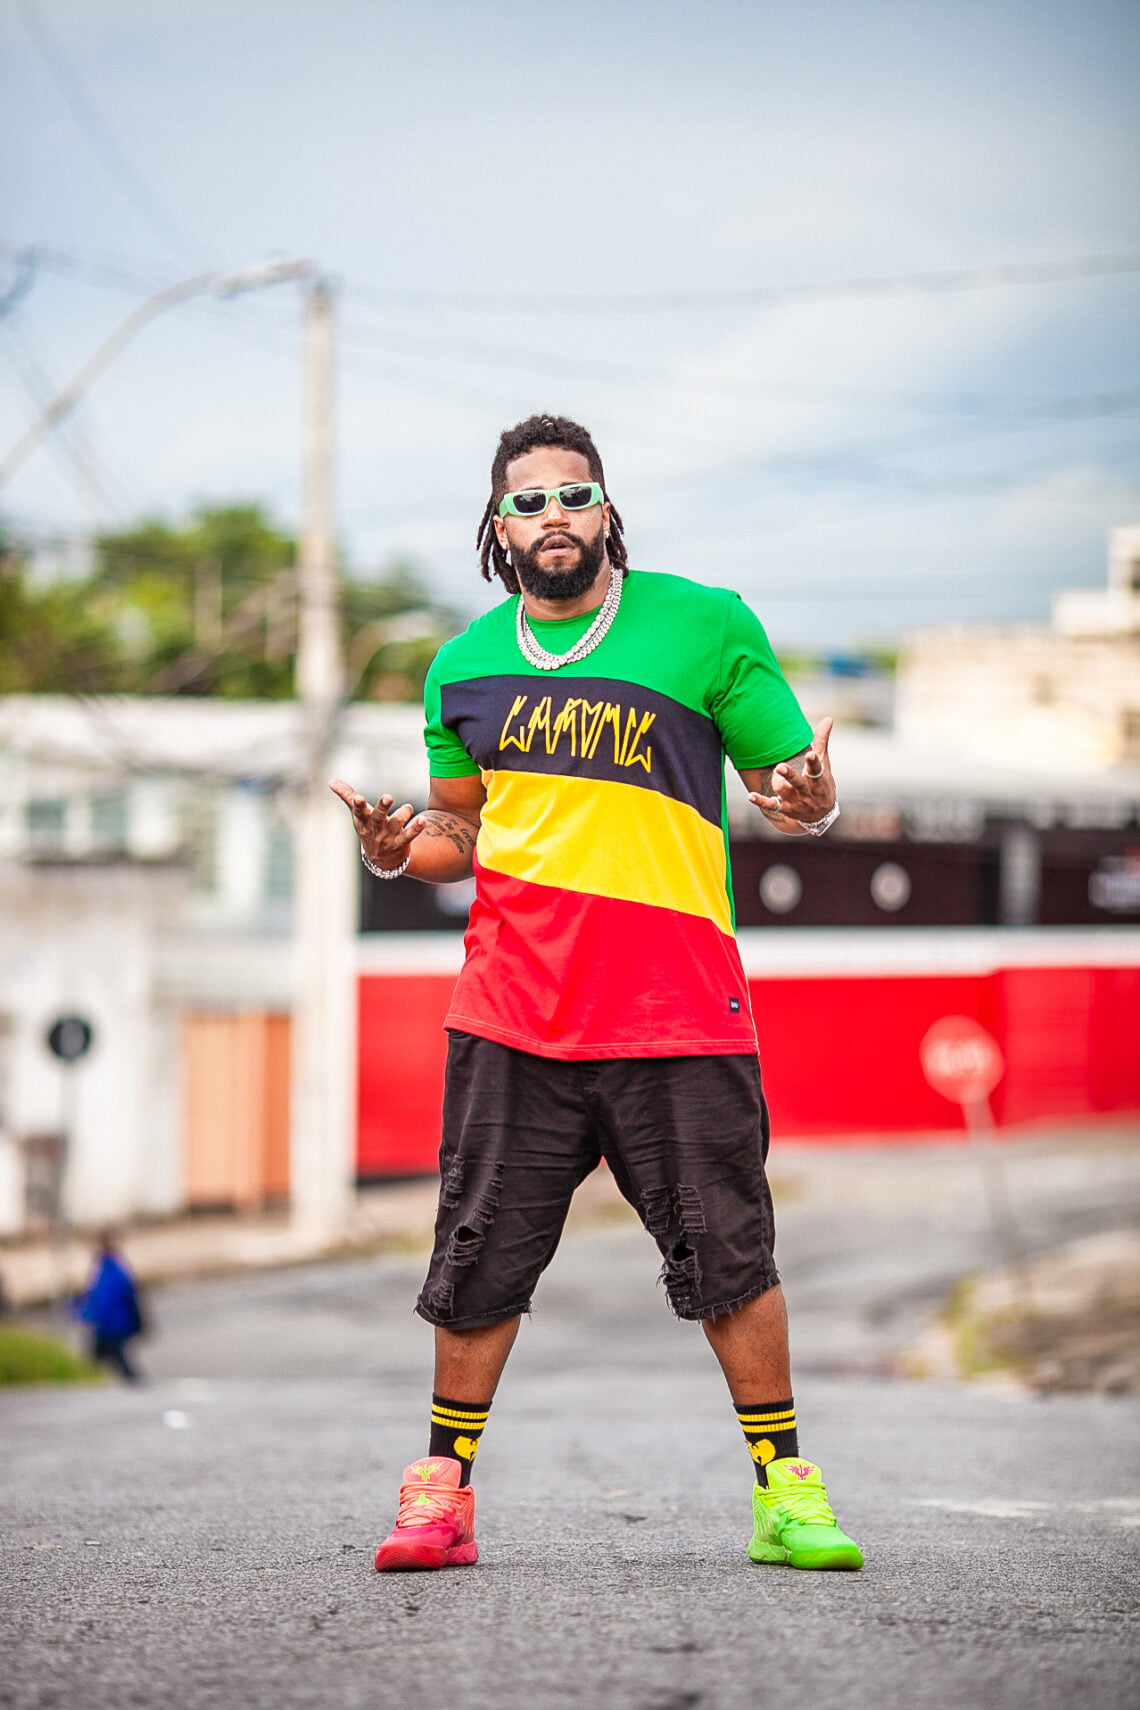 foto do artista Adam Araújo em uma rua fazendo uma pose para o fotógrafo. O artista é um homem negro, com os cabelos em dreads, blusa nas cores verde amarelo preto e vermelho e bermuda preta. Ele usa óculos escuros e um colar.